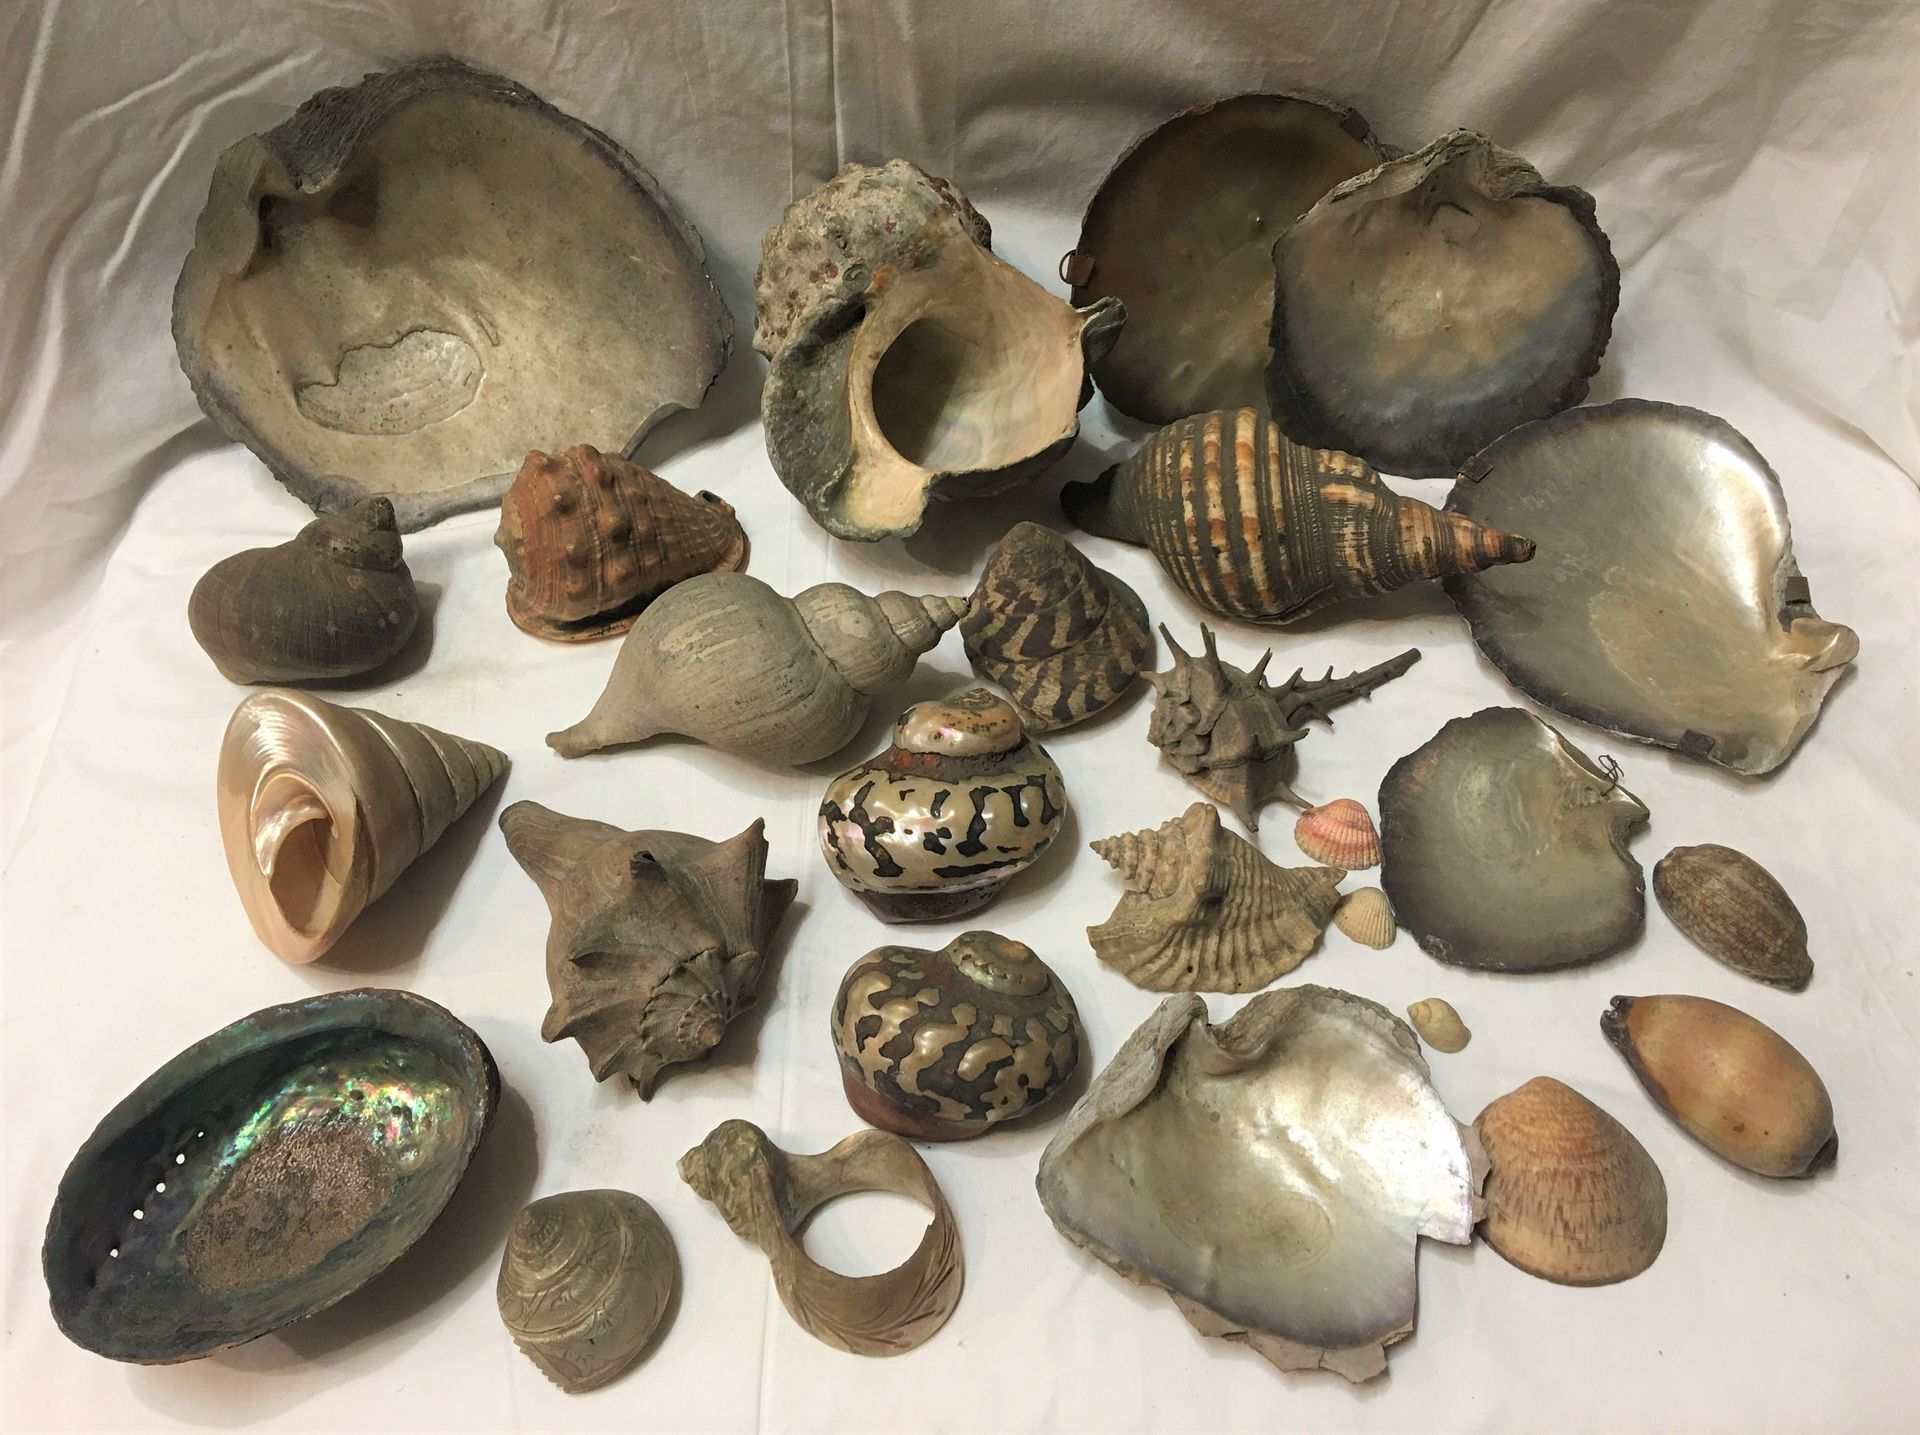 Null Lote compuesto por 20 ejemplares de conchas marinas exóticas que incluyen:
&hellip;